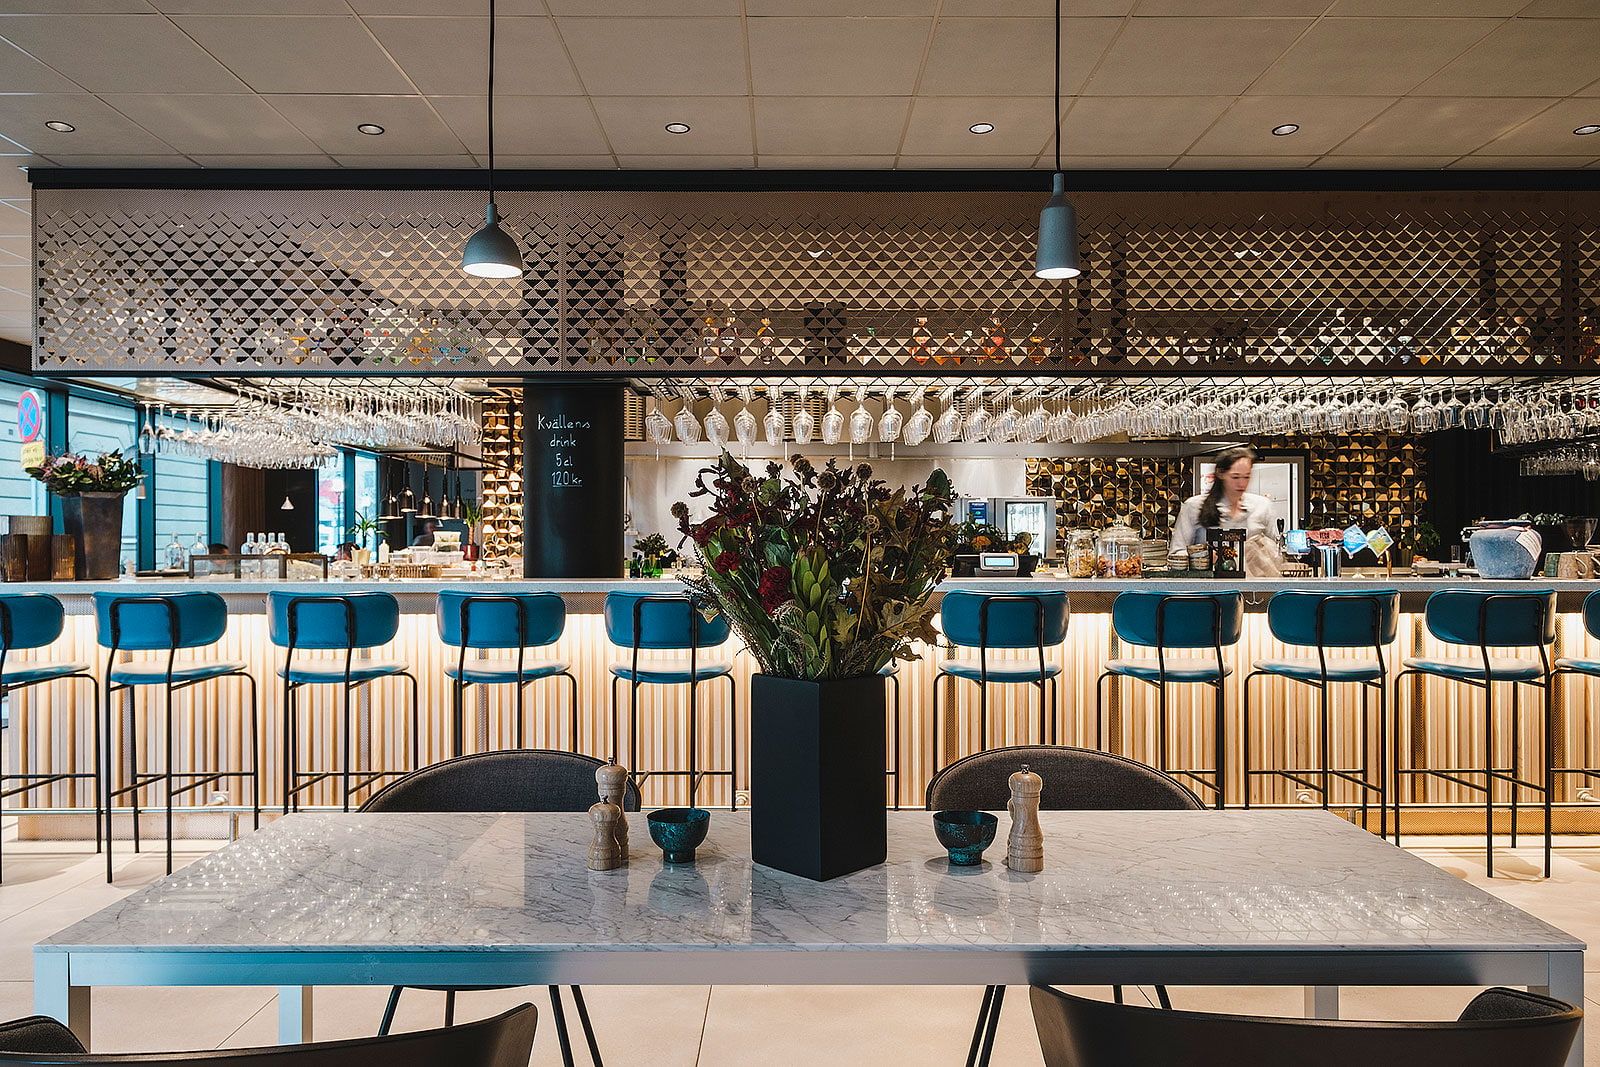 Noot Nordik Kitchen & Bar – Lunch restaurants